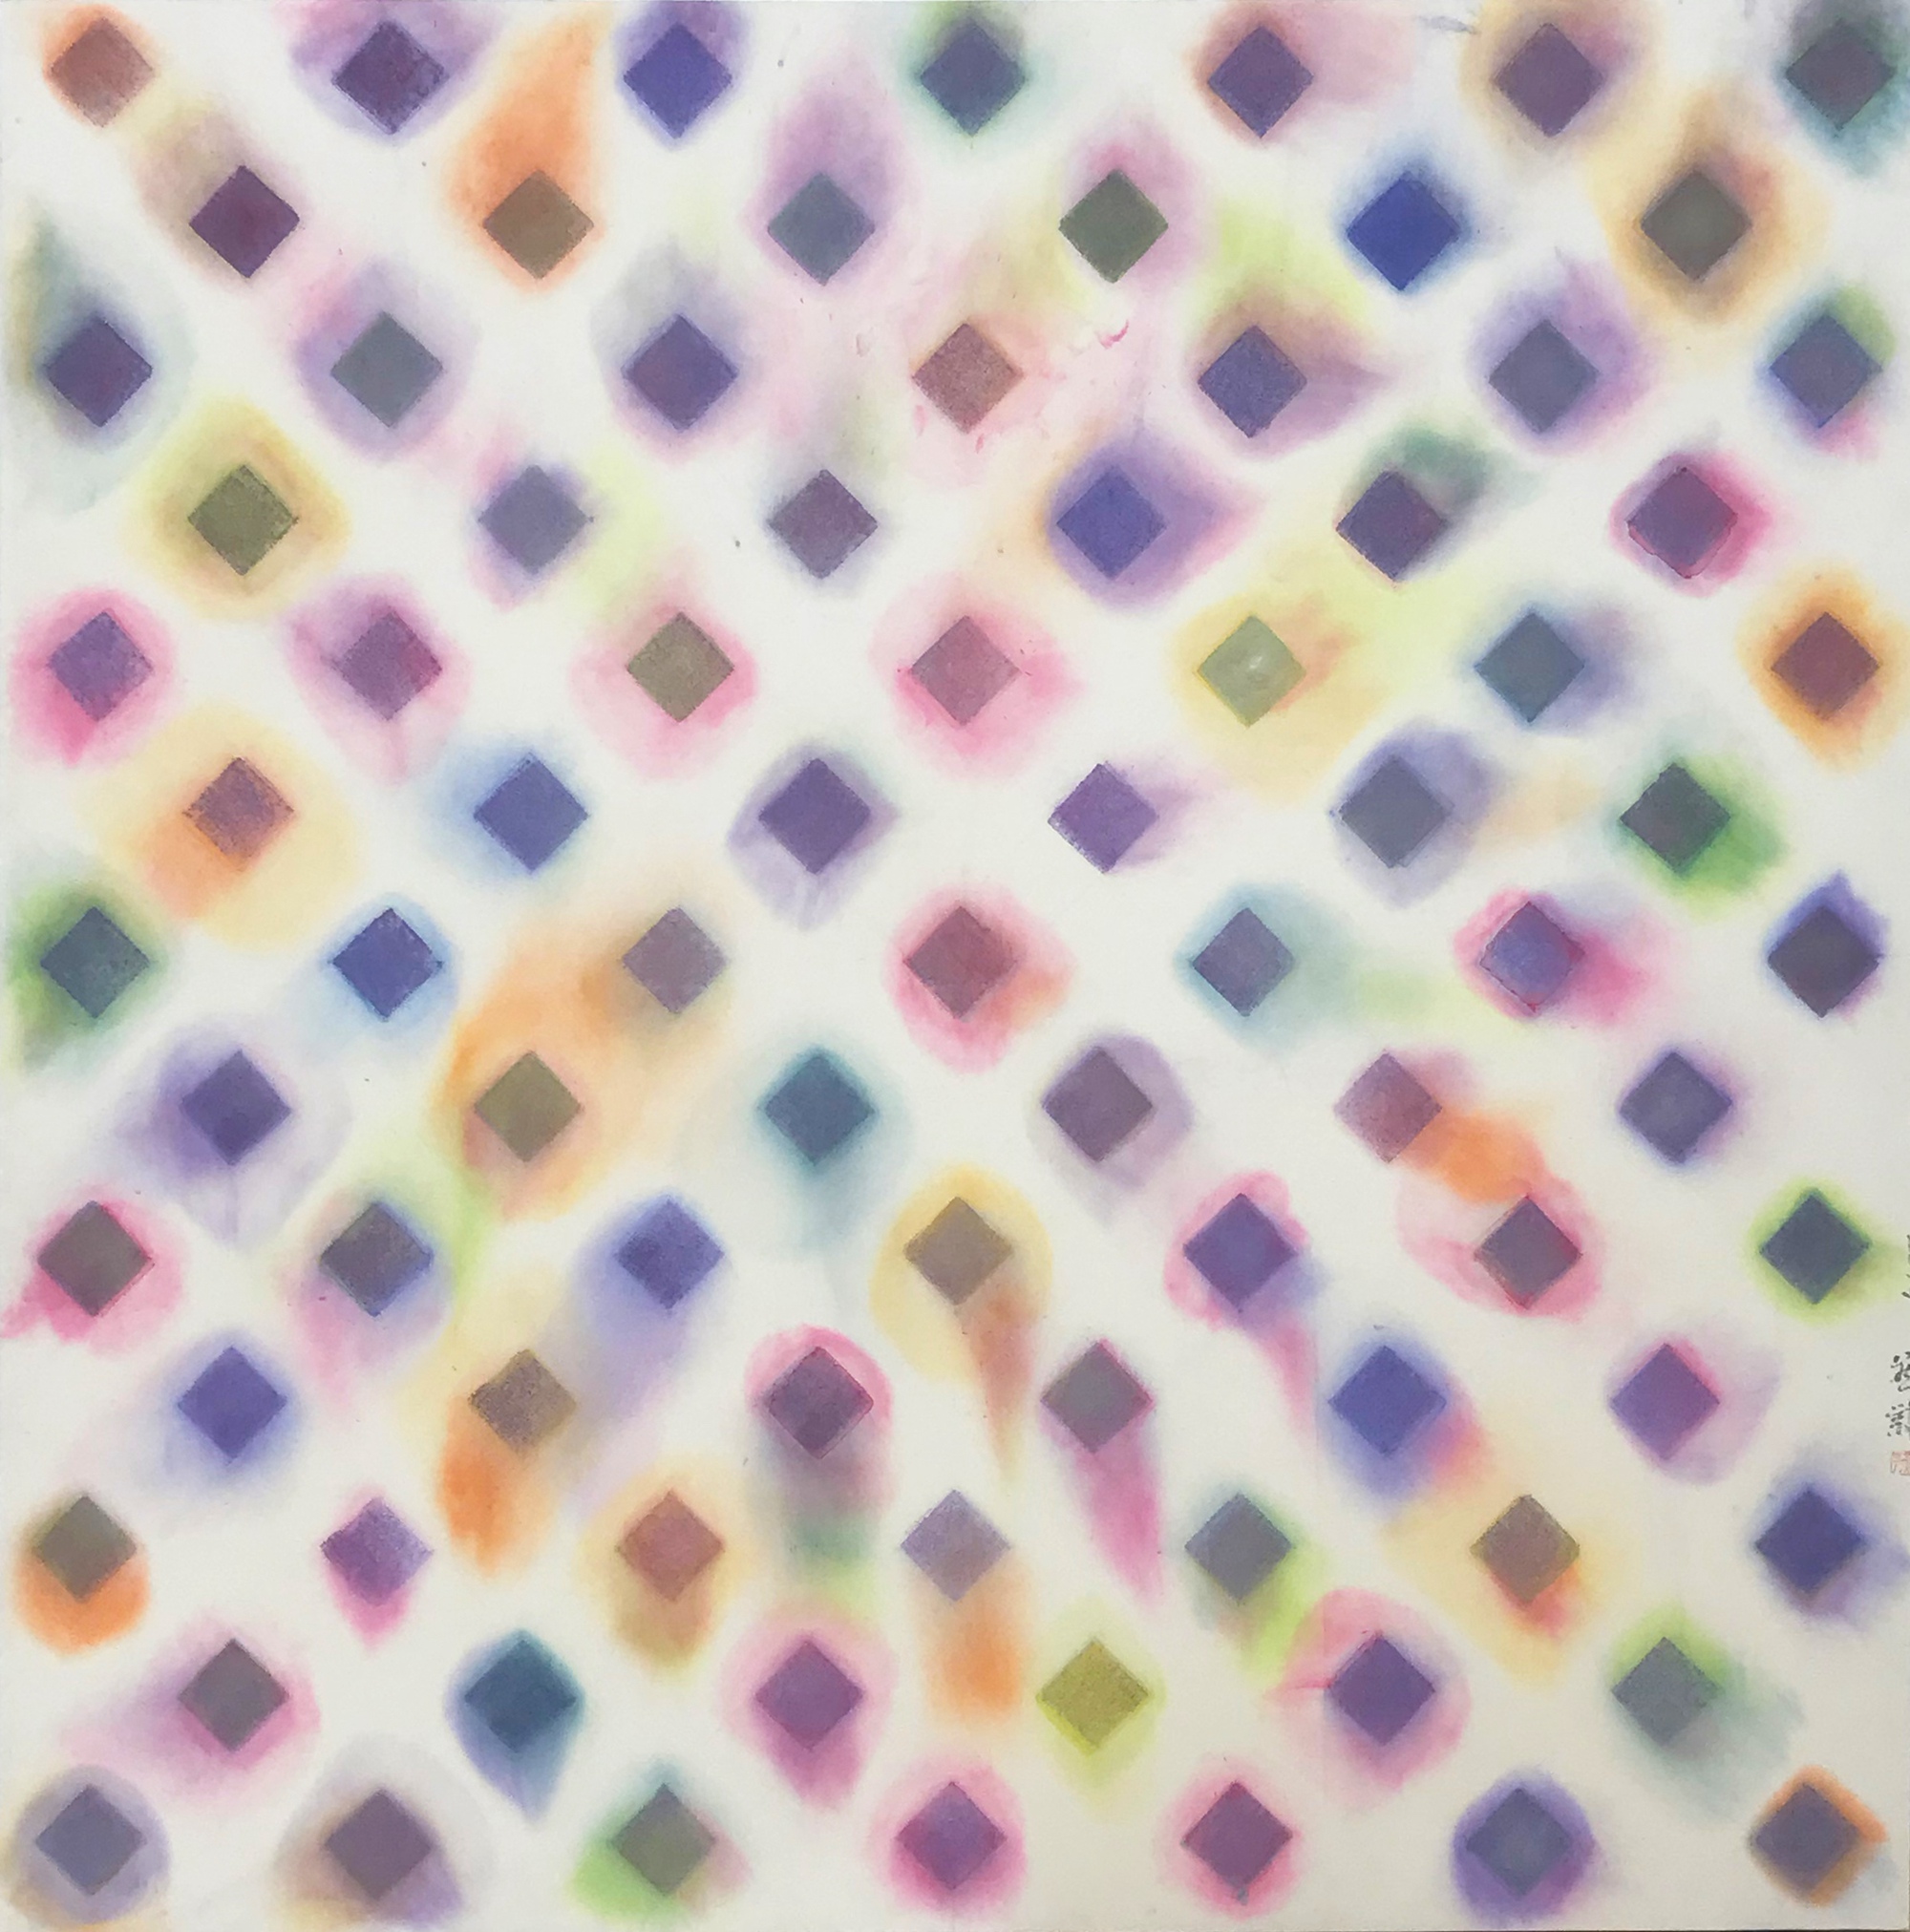 36 章燕紫 荷尔蒙之二 纸上水墨设色122×124cm 2019年.jpg